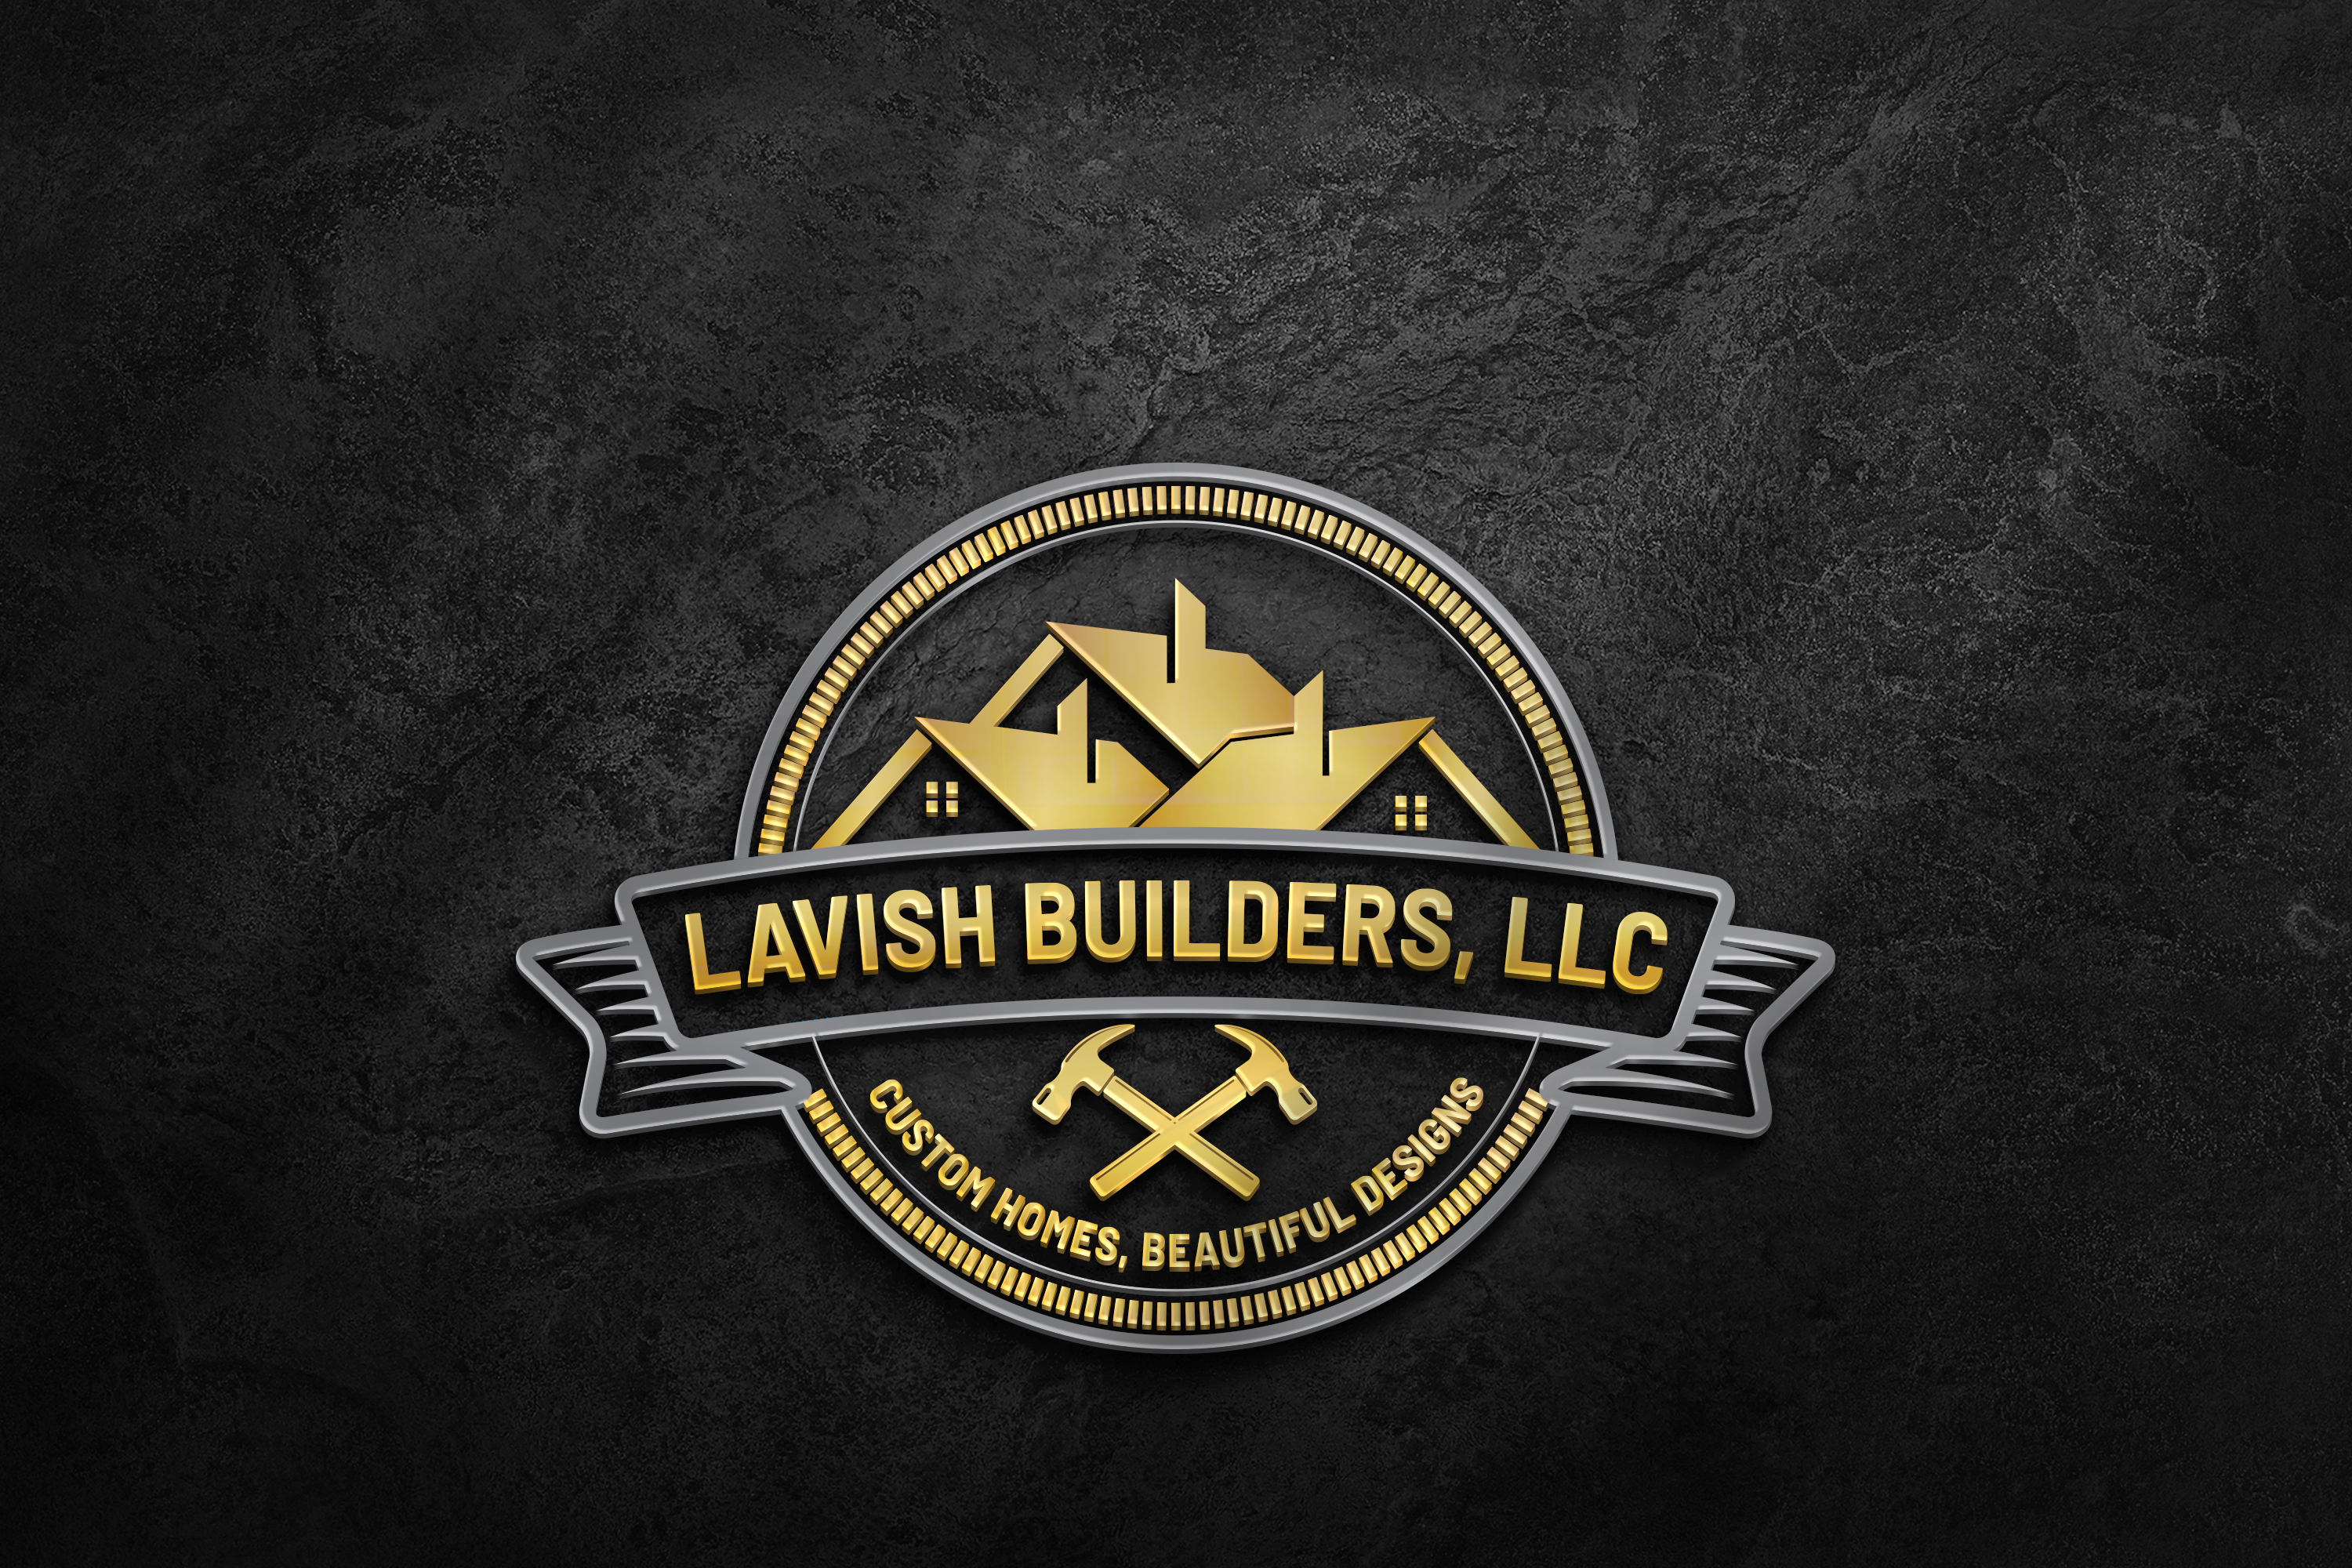 Lavish Builders, LLC. logo